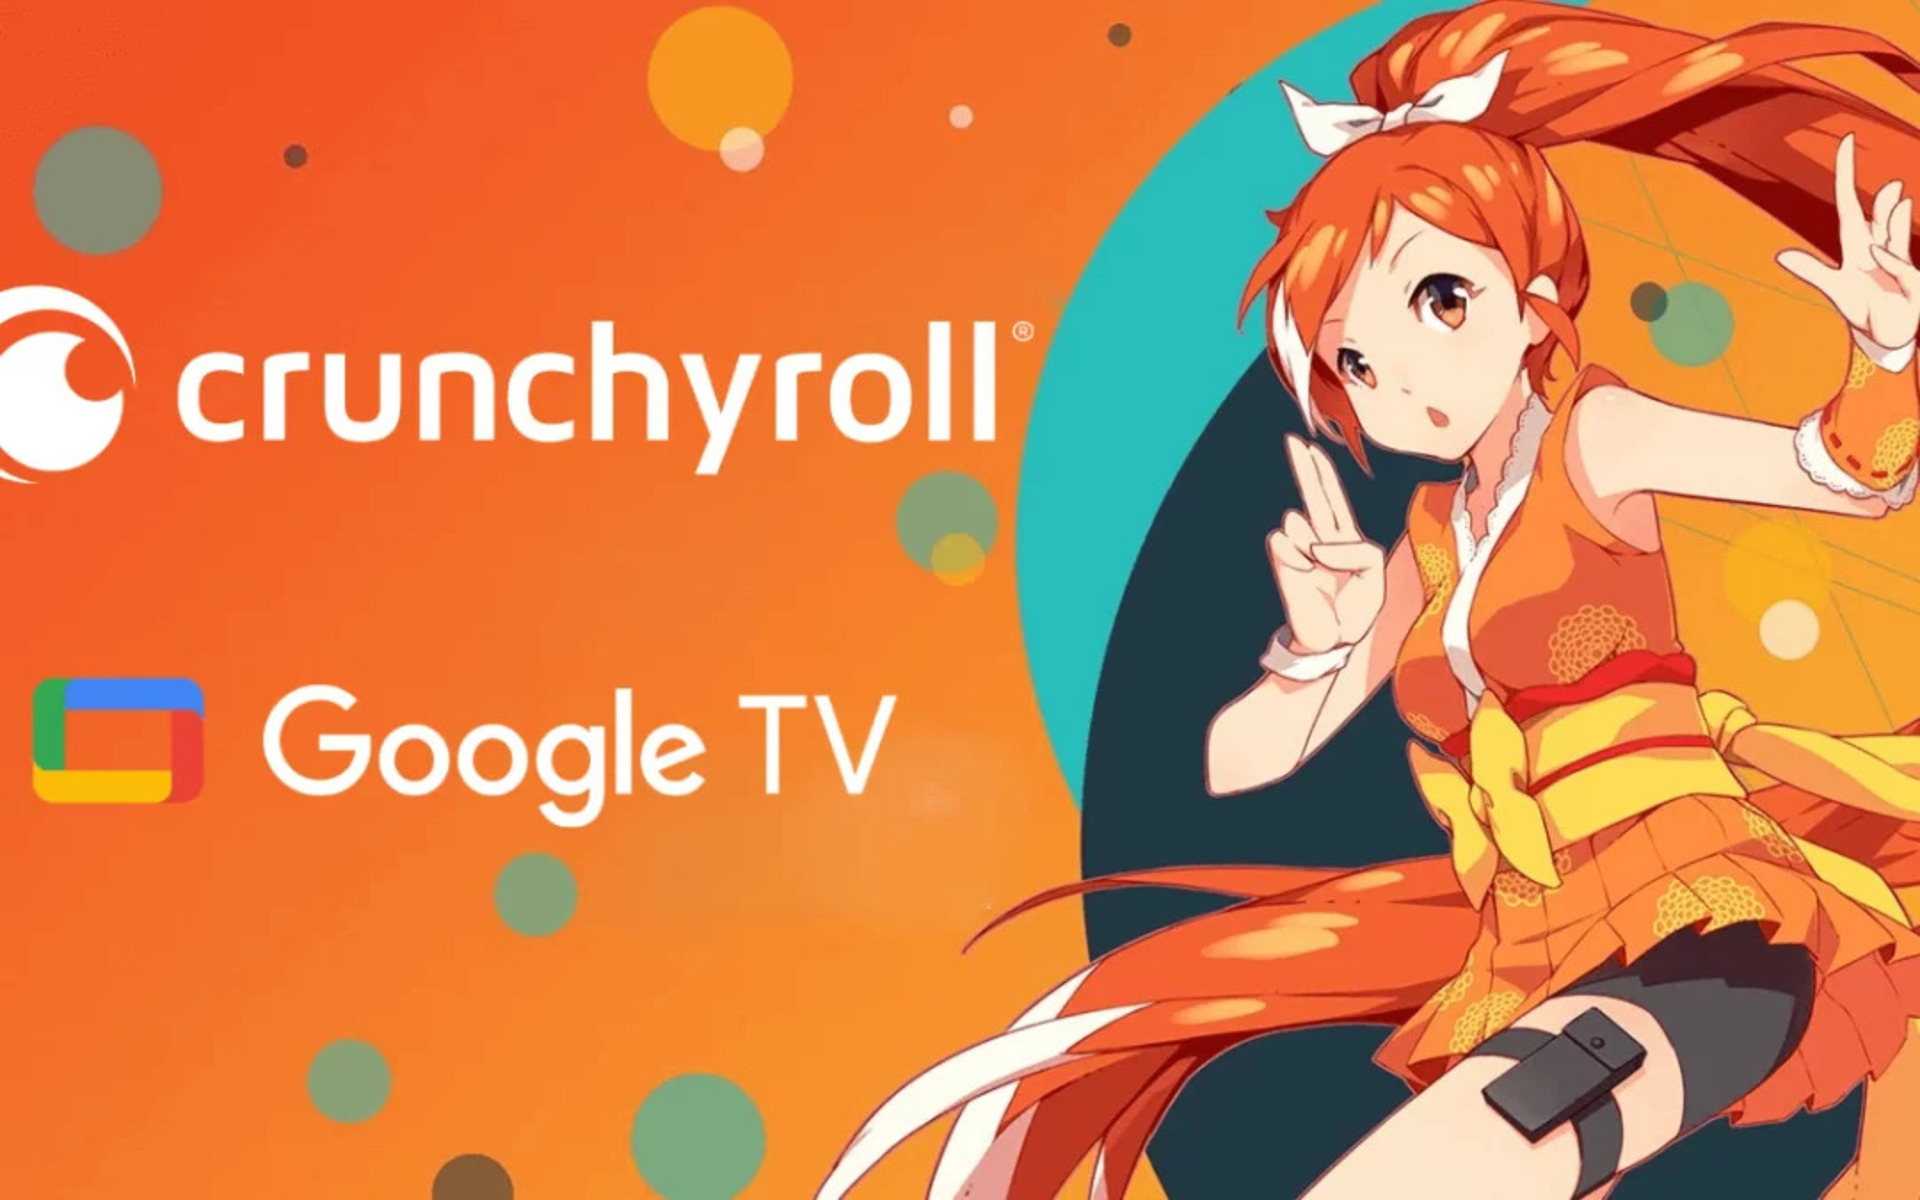 Crunchyroll on Google TV 1080x675 1